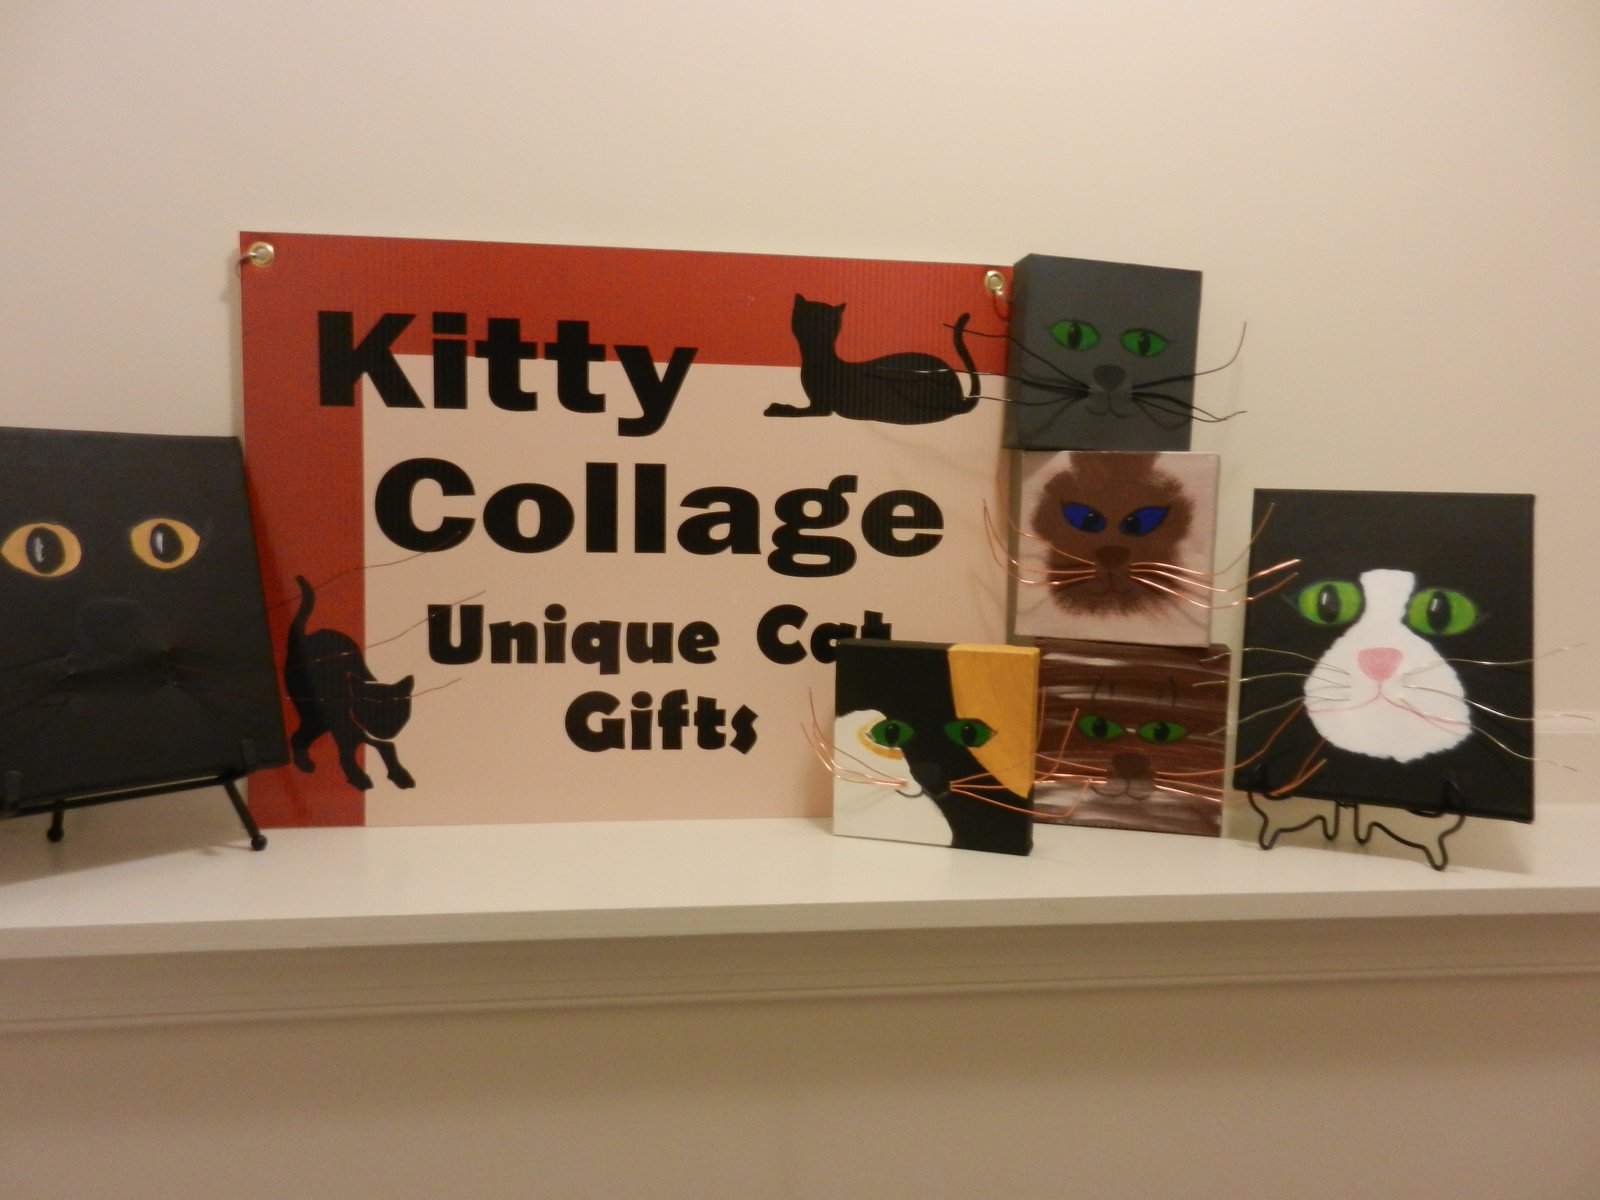 KittyCollage